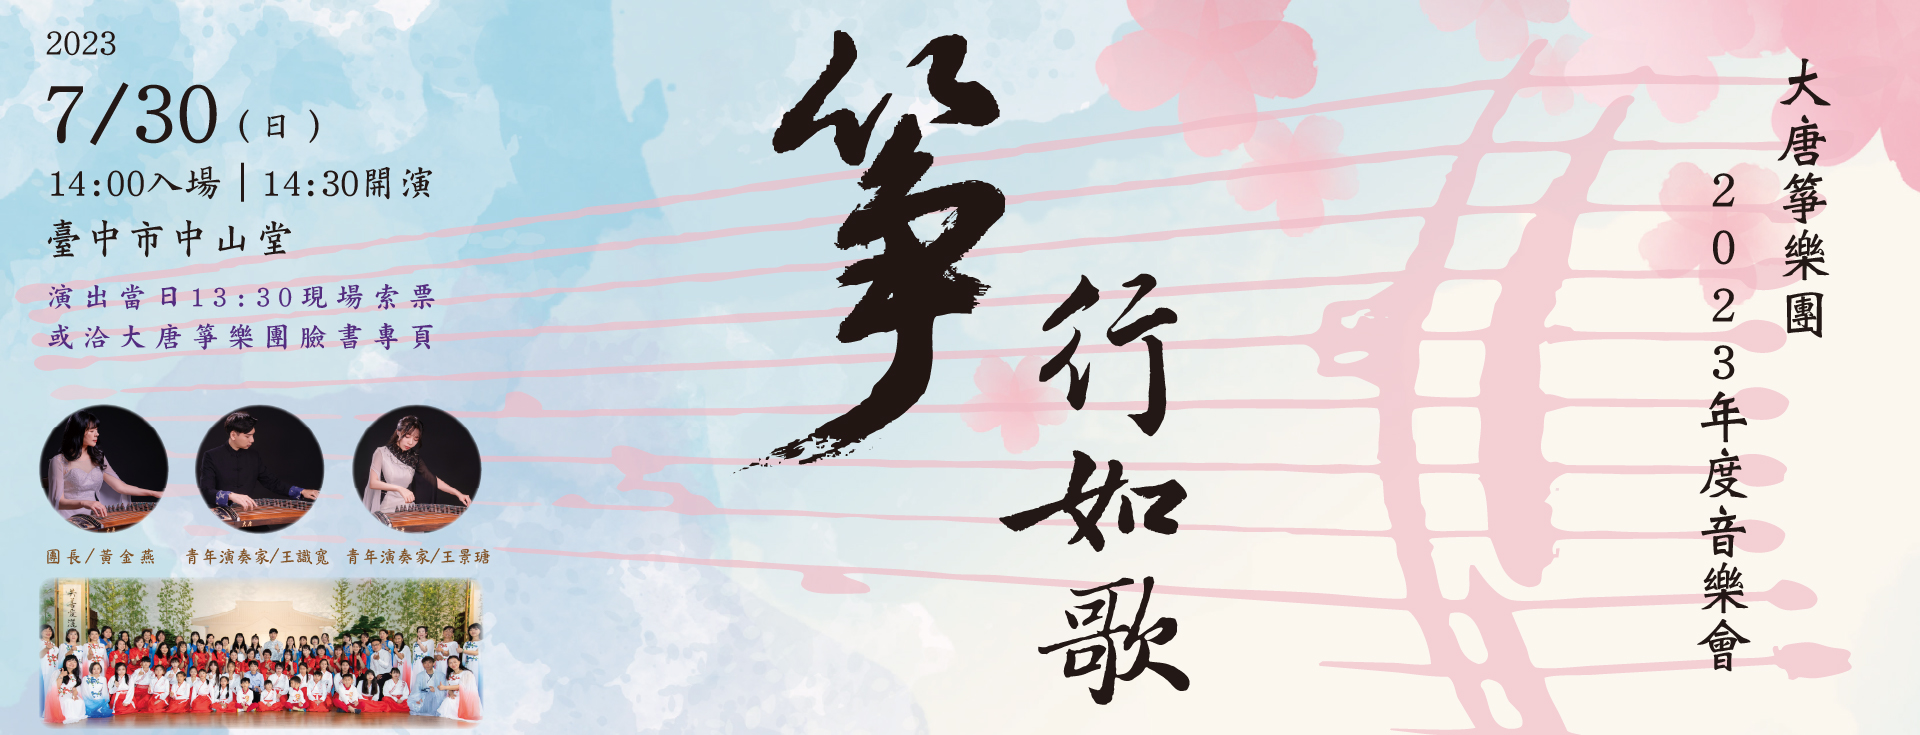 大唐箏樂團2023年度音樂會—《箏行如歌》